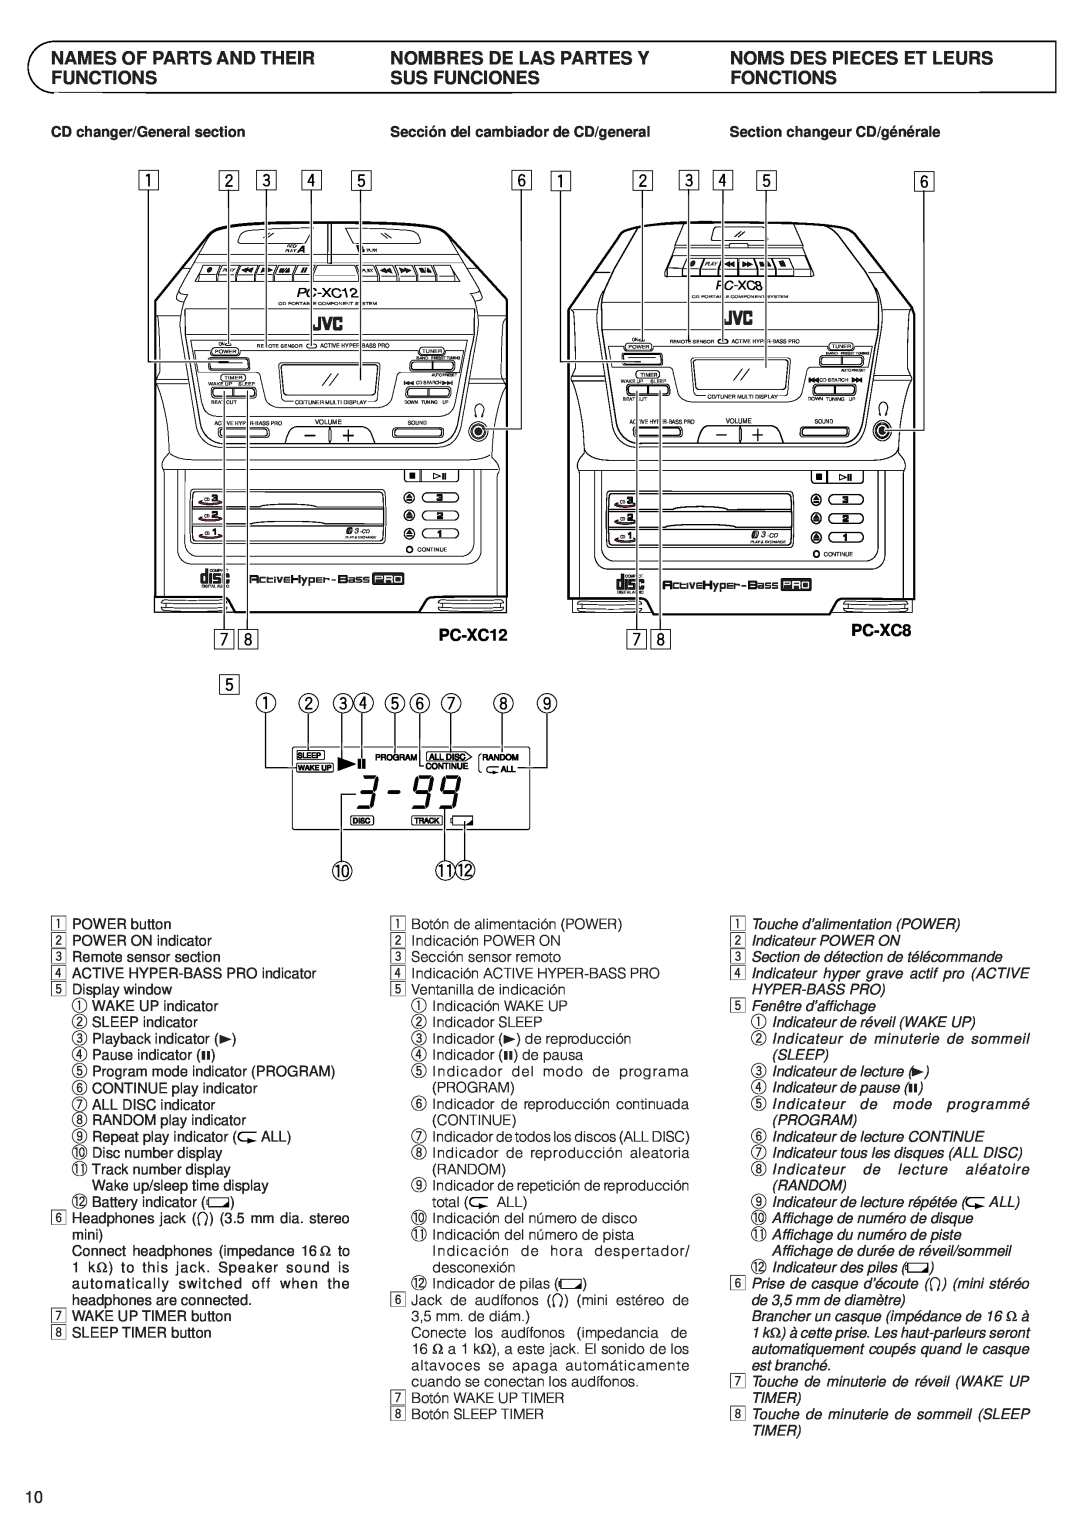 JVC PC-XC8 manual 5 1 2, Names Of Parts And Their Functions, Nombres De Las Partes Y Sus Funciones, PC-XC12 